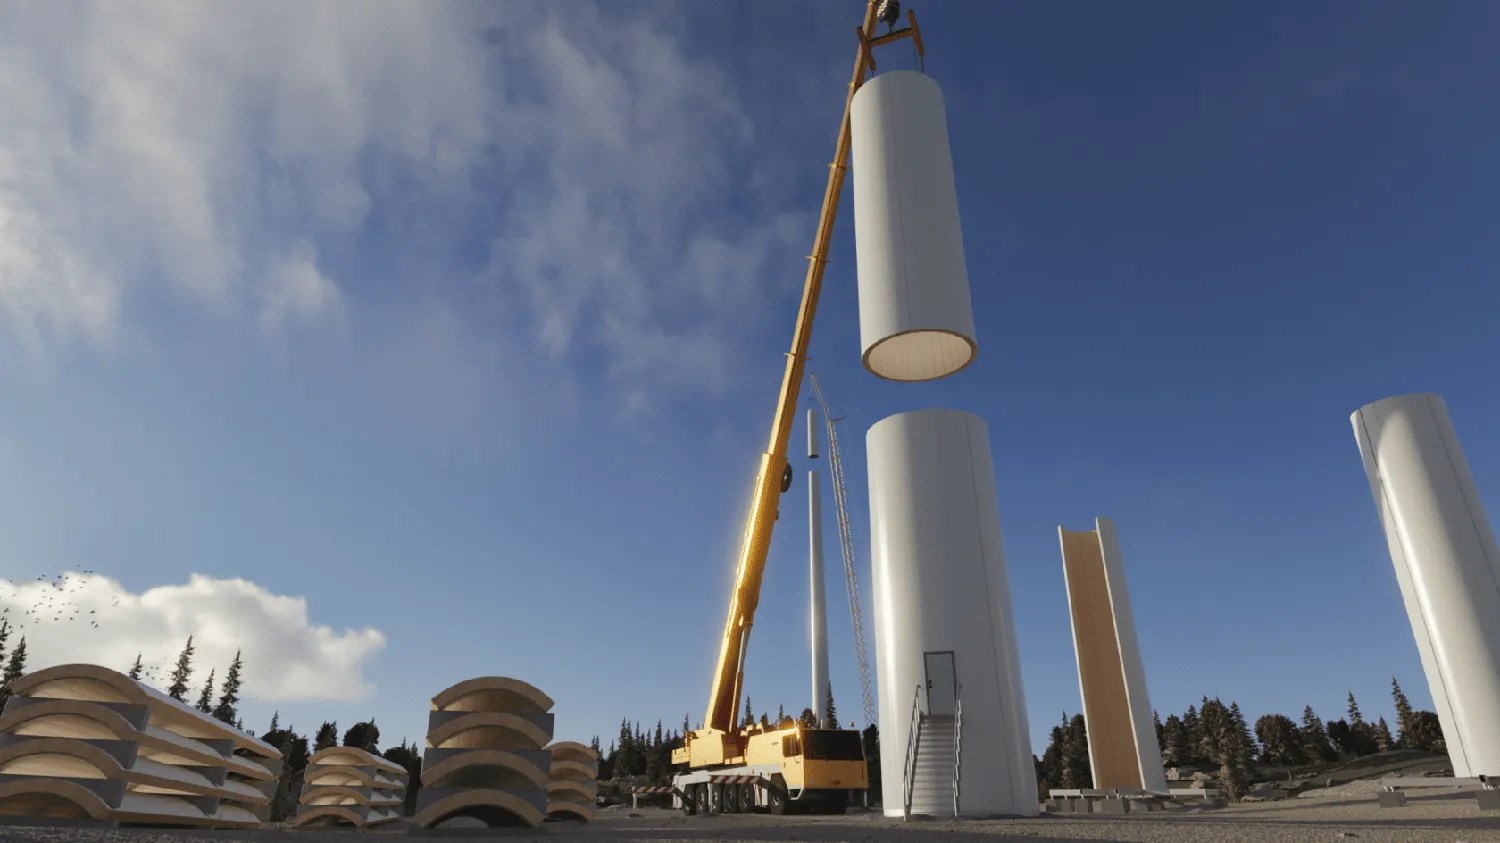 İsveç'de dünyanın en uzun ahşap kuleli rüzgar türbini inşa edildi